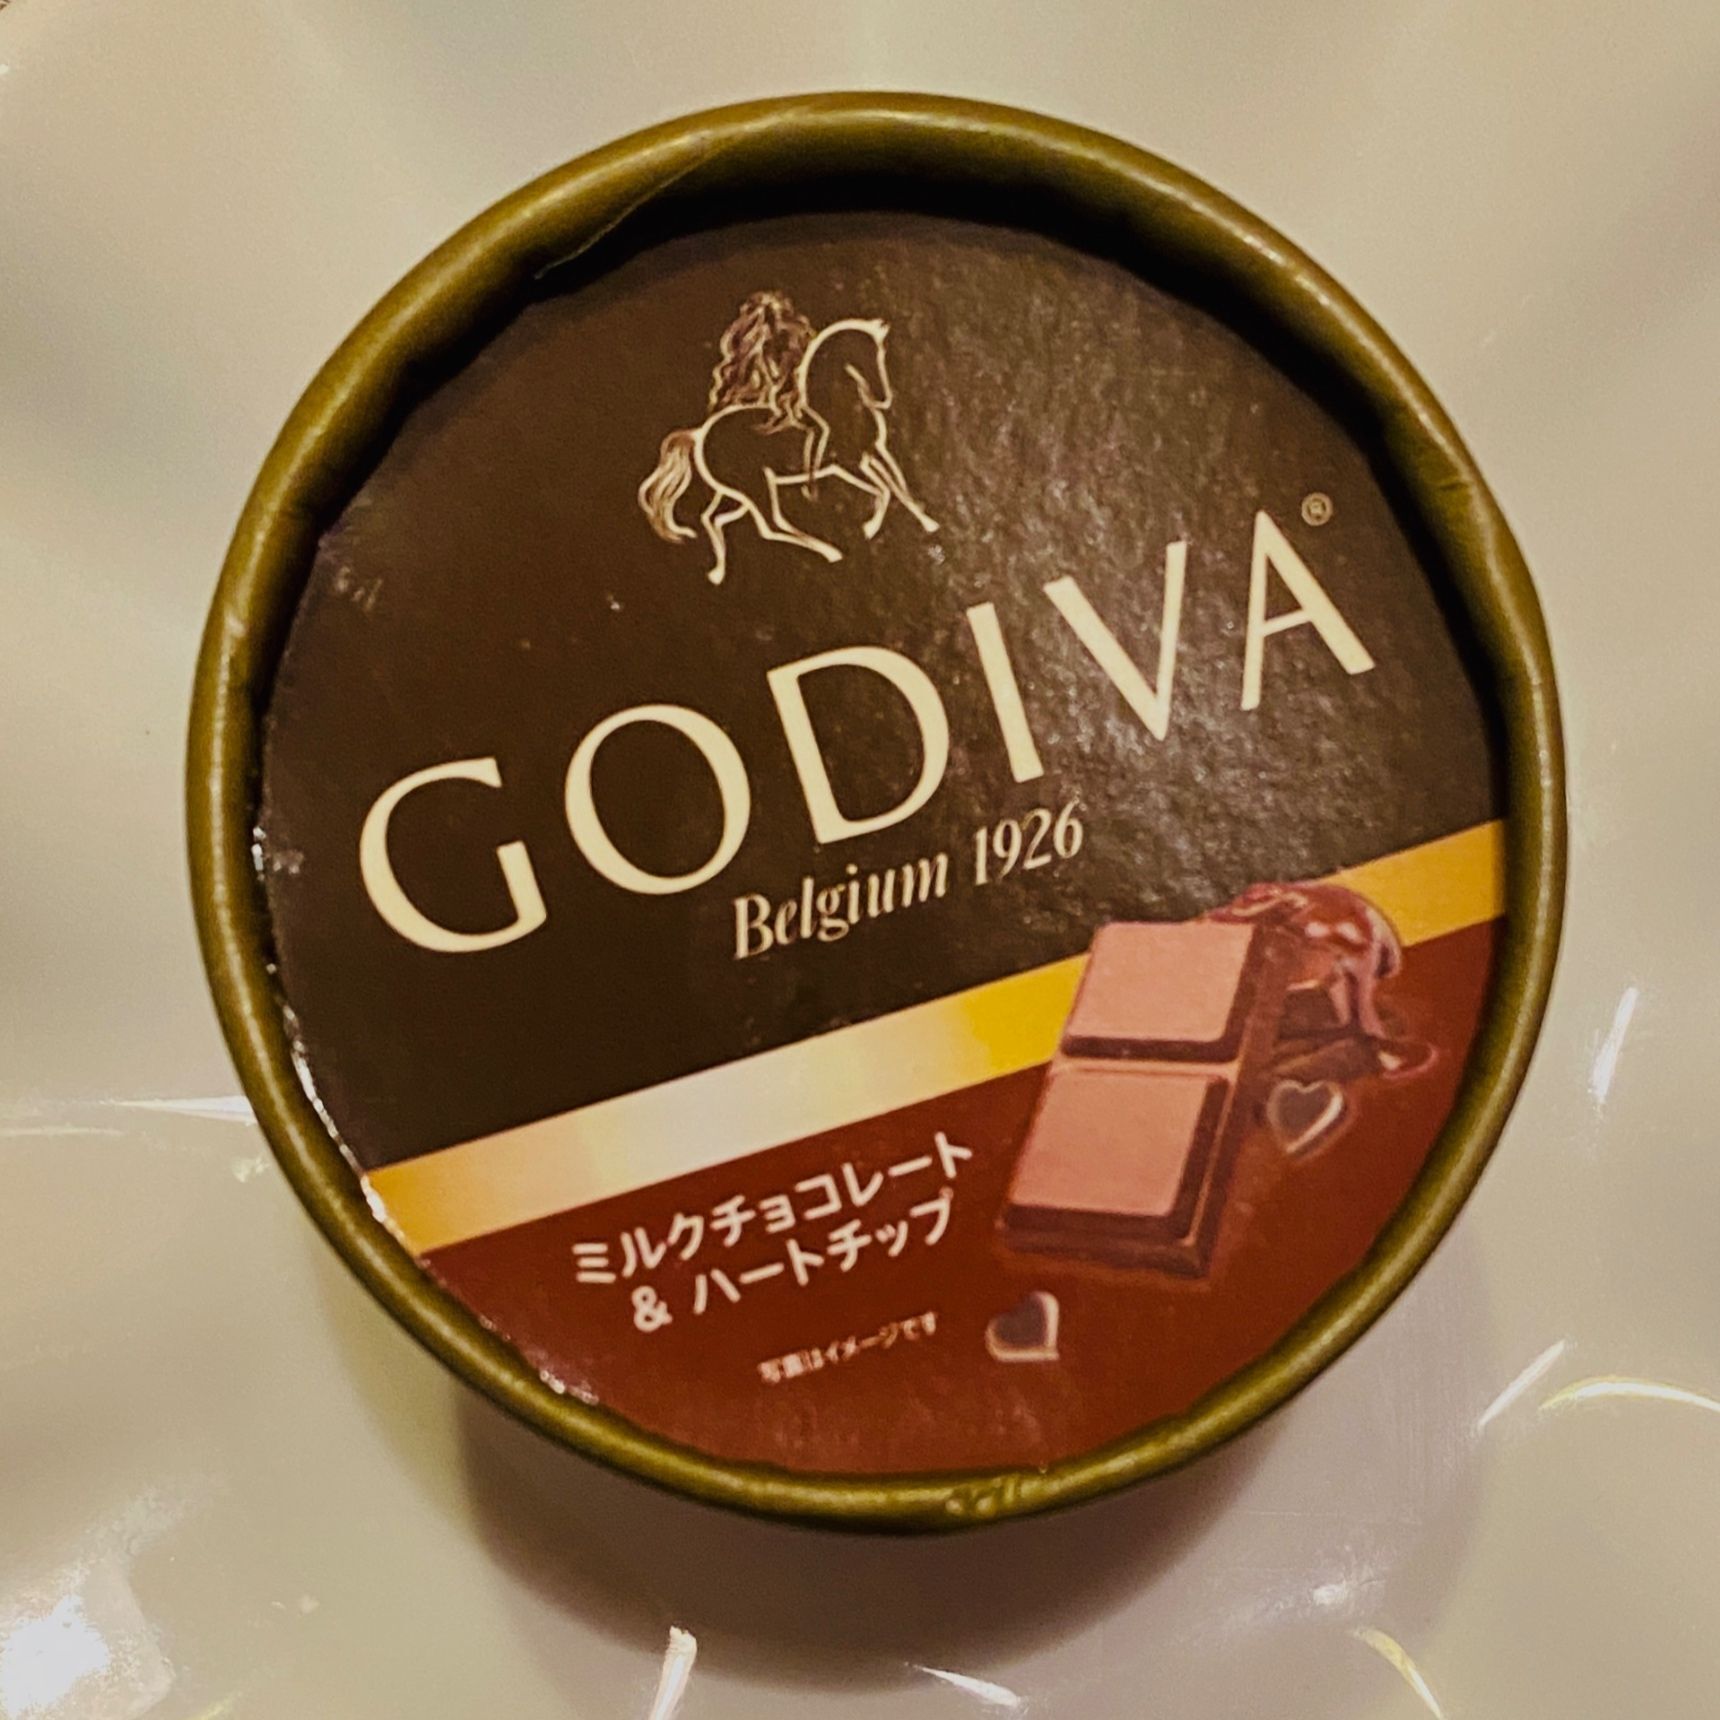 ハートチョコレートチップがアクセントになっているのはGODIVAだけ